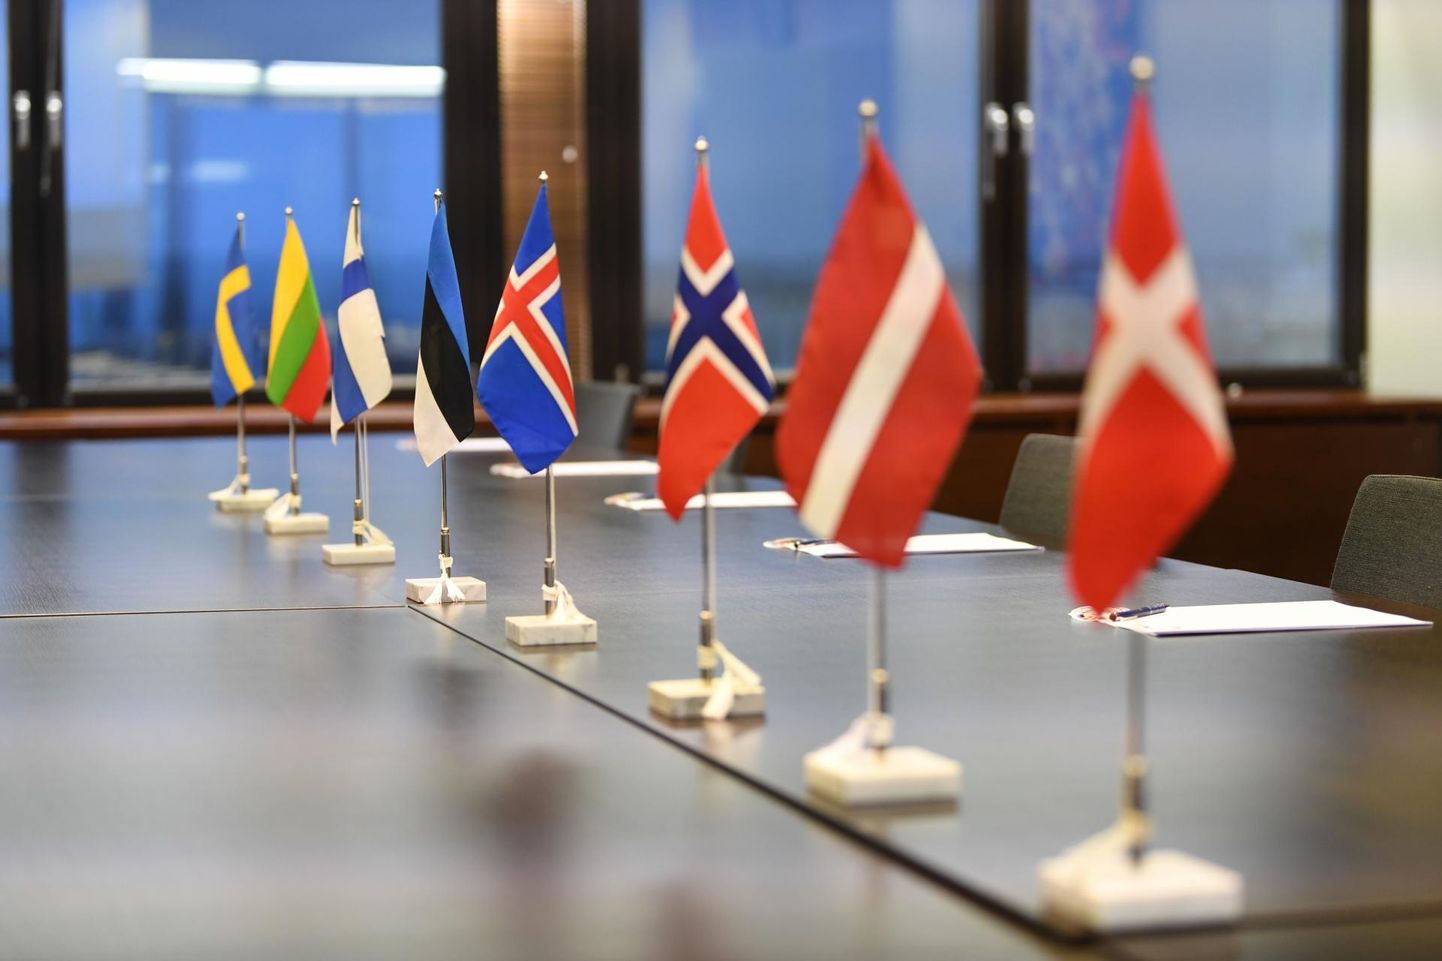 Põhjamaade ja Balti riikide koostöö hõlmab Soomet, Rootsit, Norrat, Islandit, Taanit, Eestit, Lätit ja Leedut.